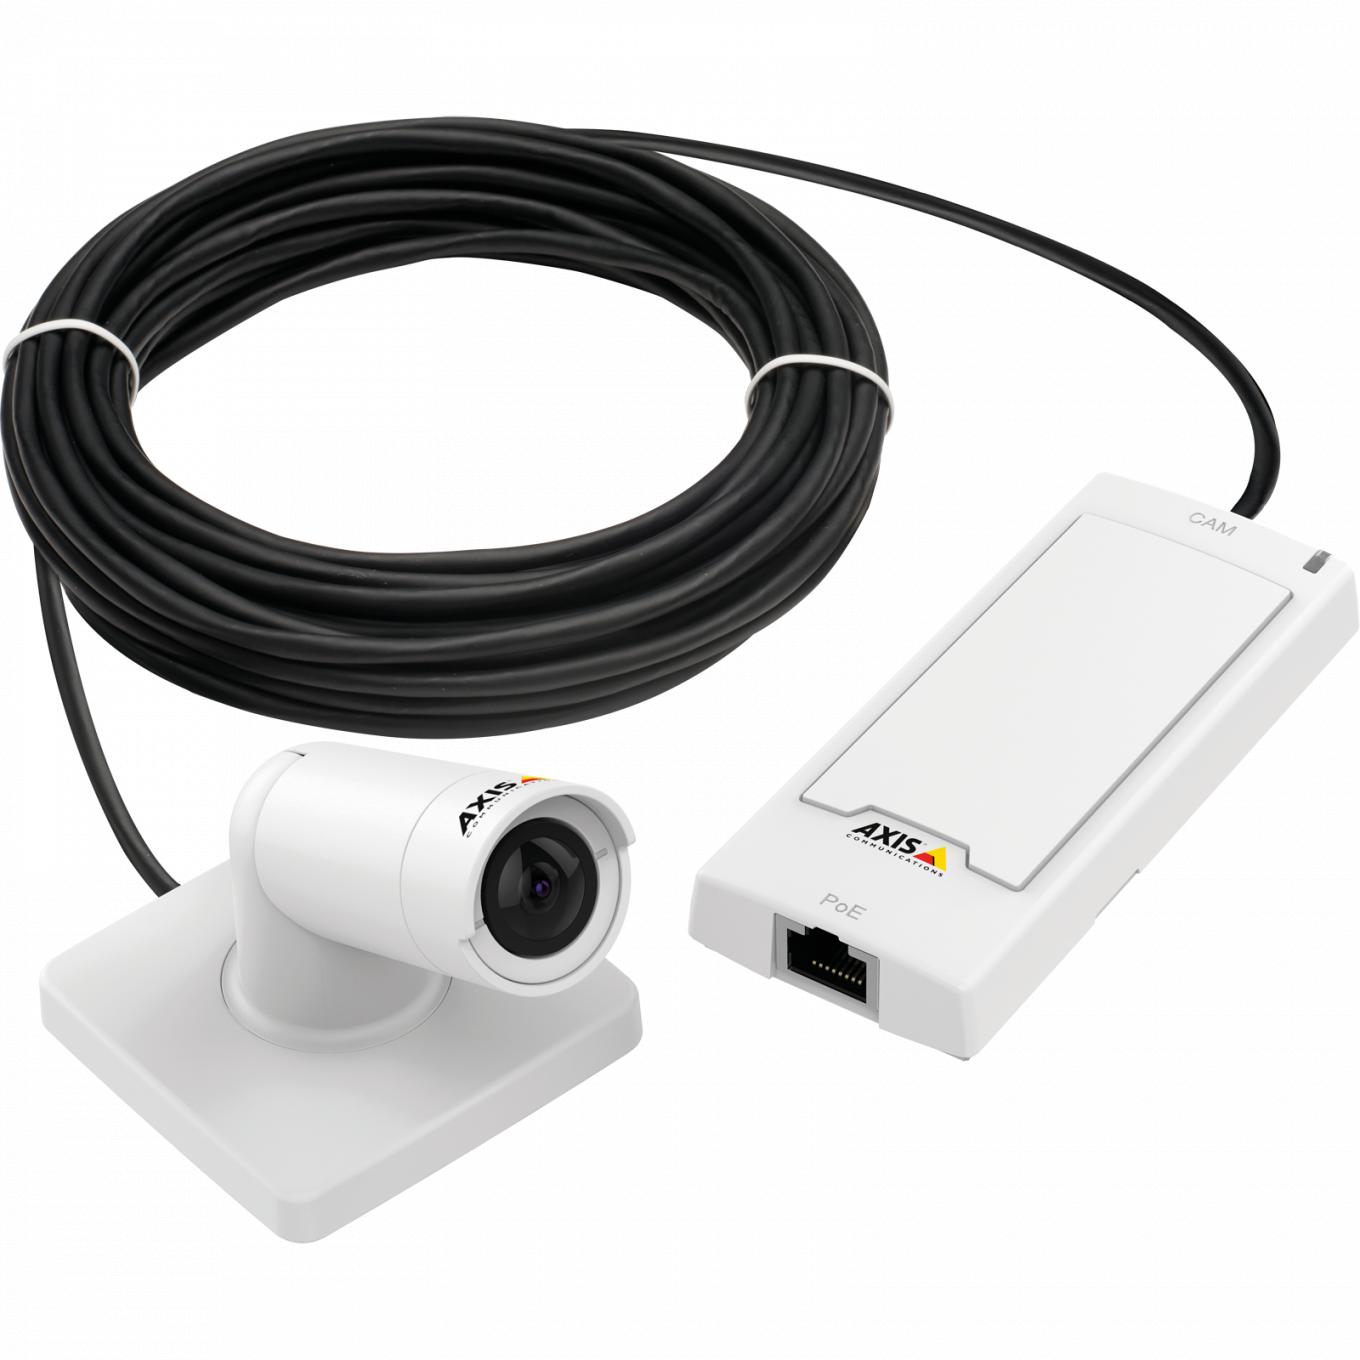 AXIS P1254 Network Camera con unidad principal y cable